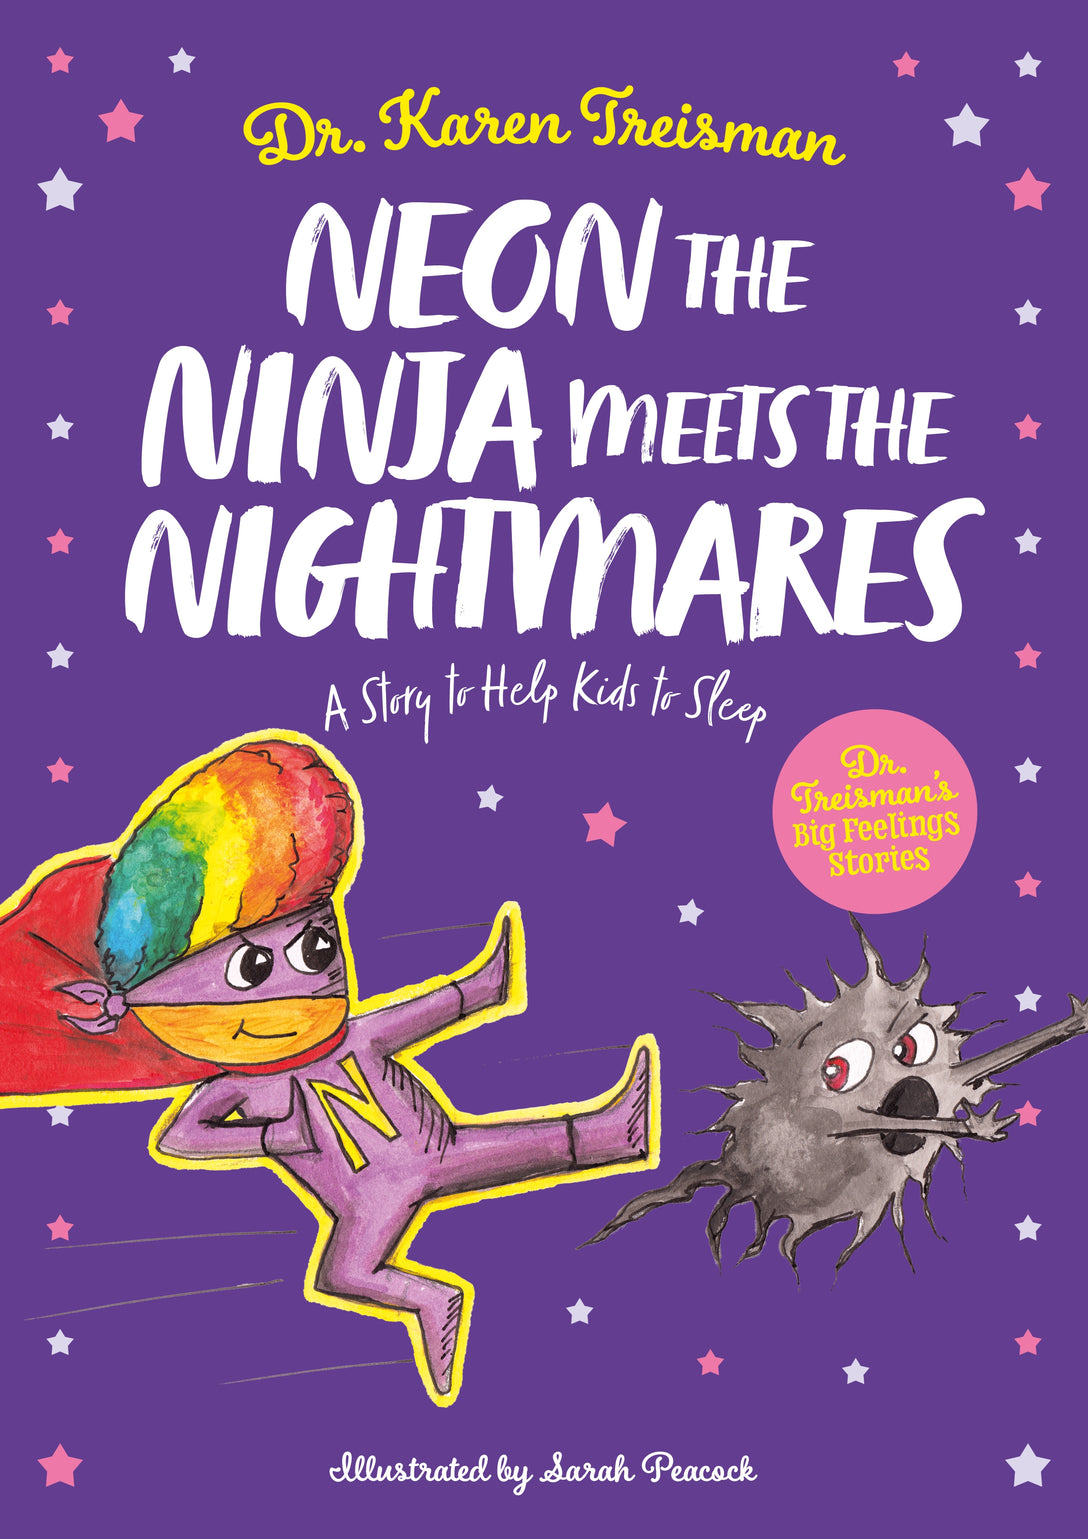 Neon the Ninja Meets the Nightmares by Sarah Peacock, Karen Treisman